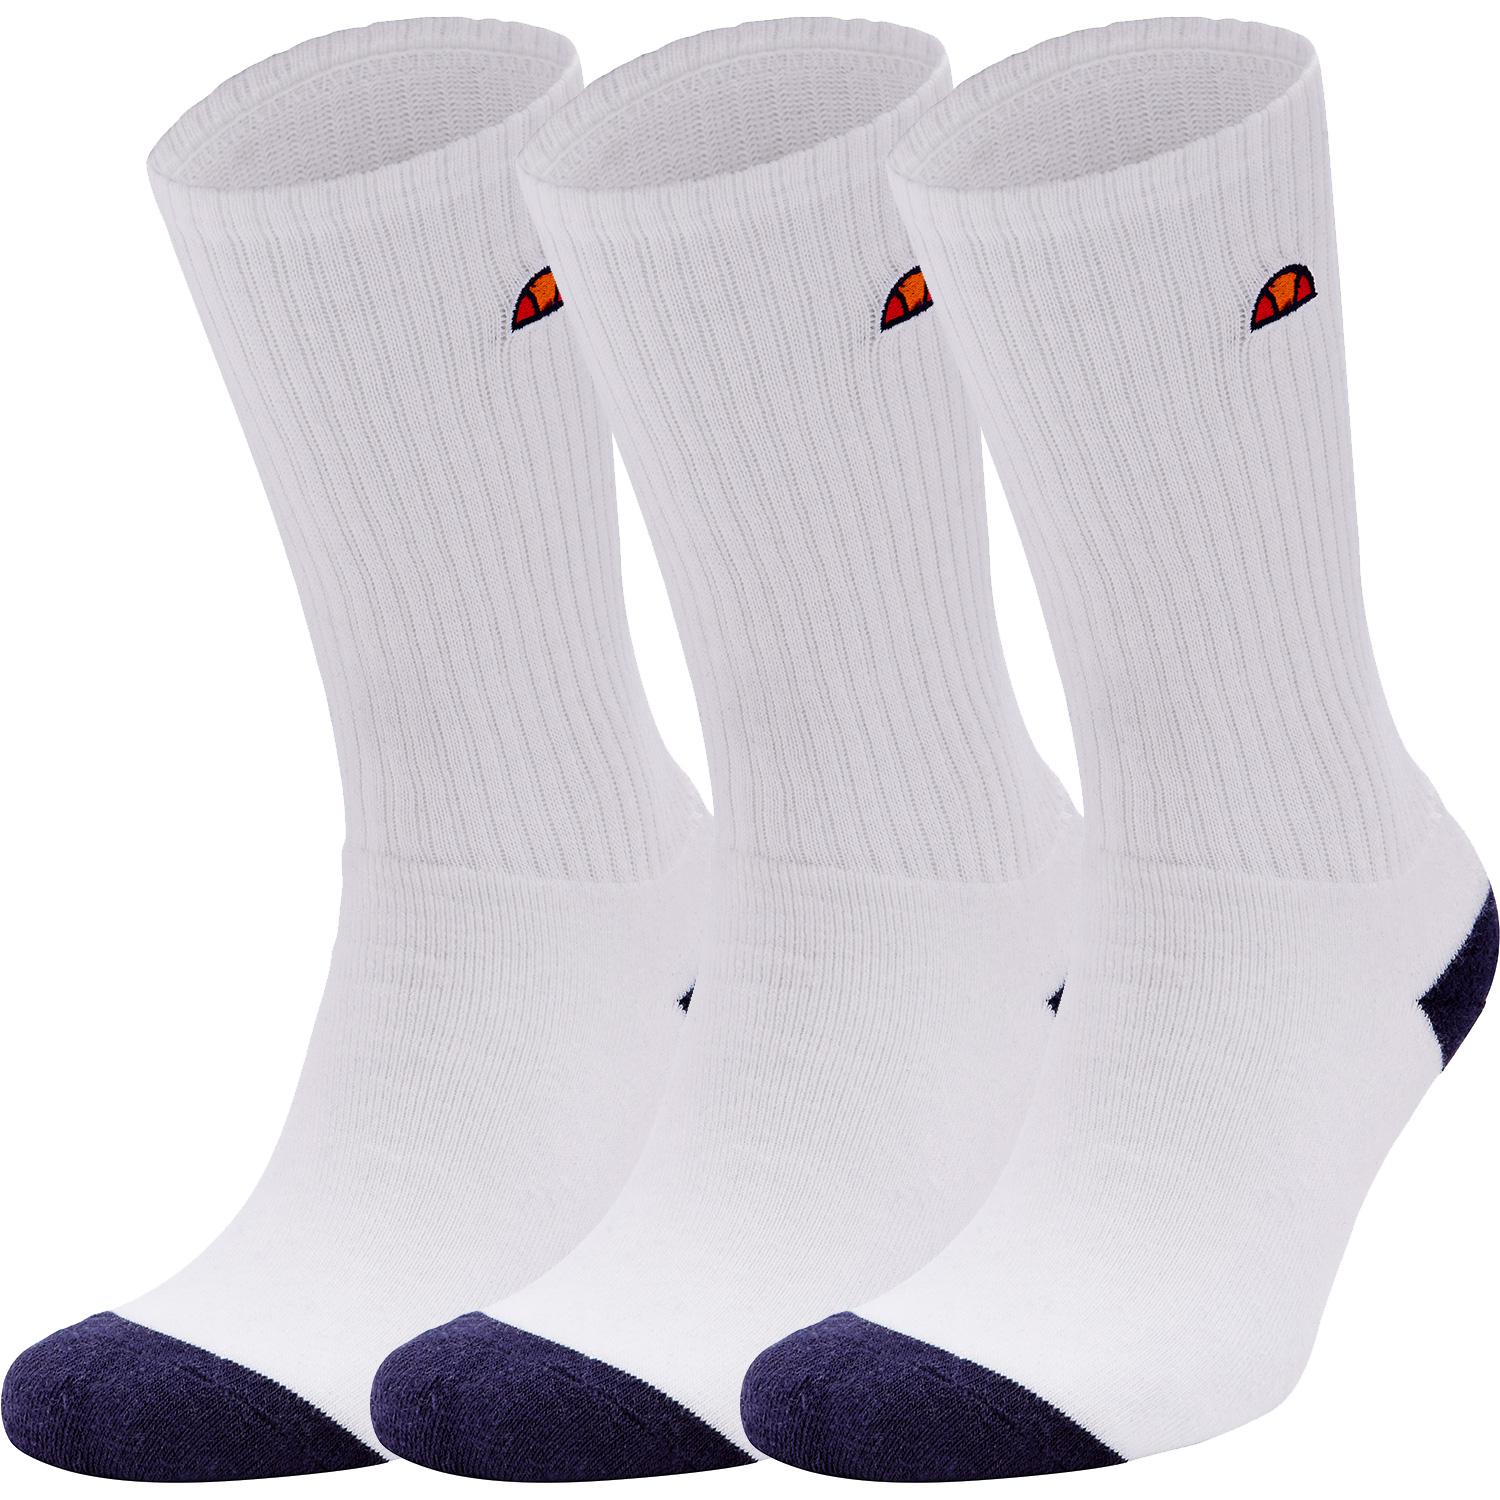 white ellesse socks